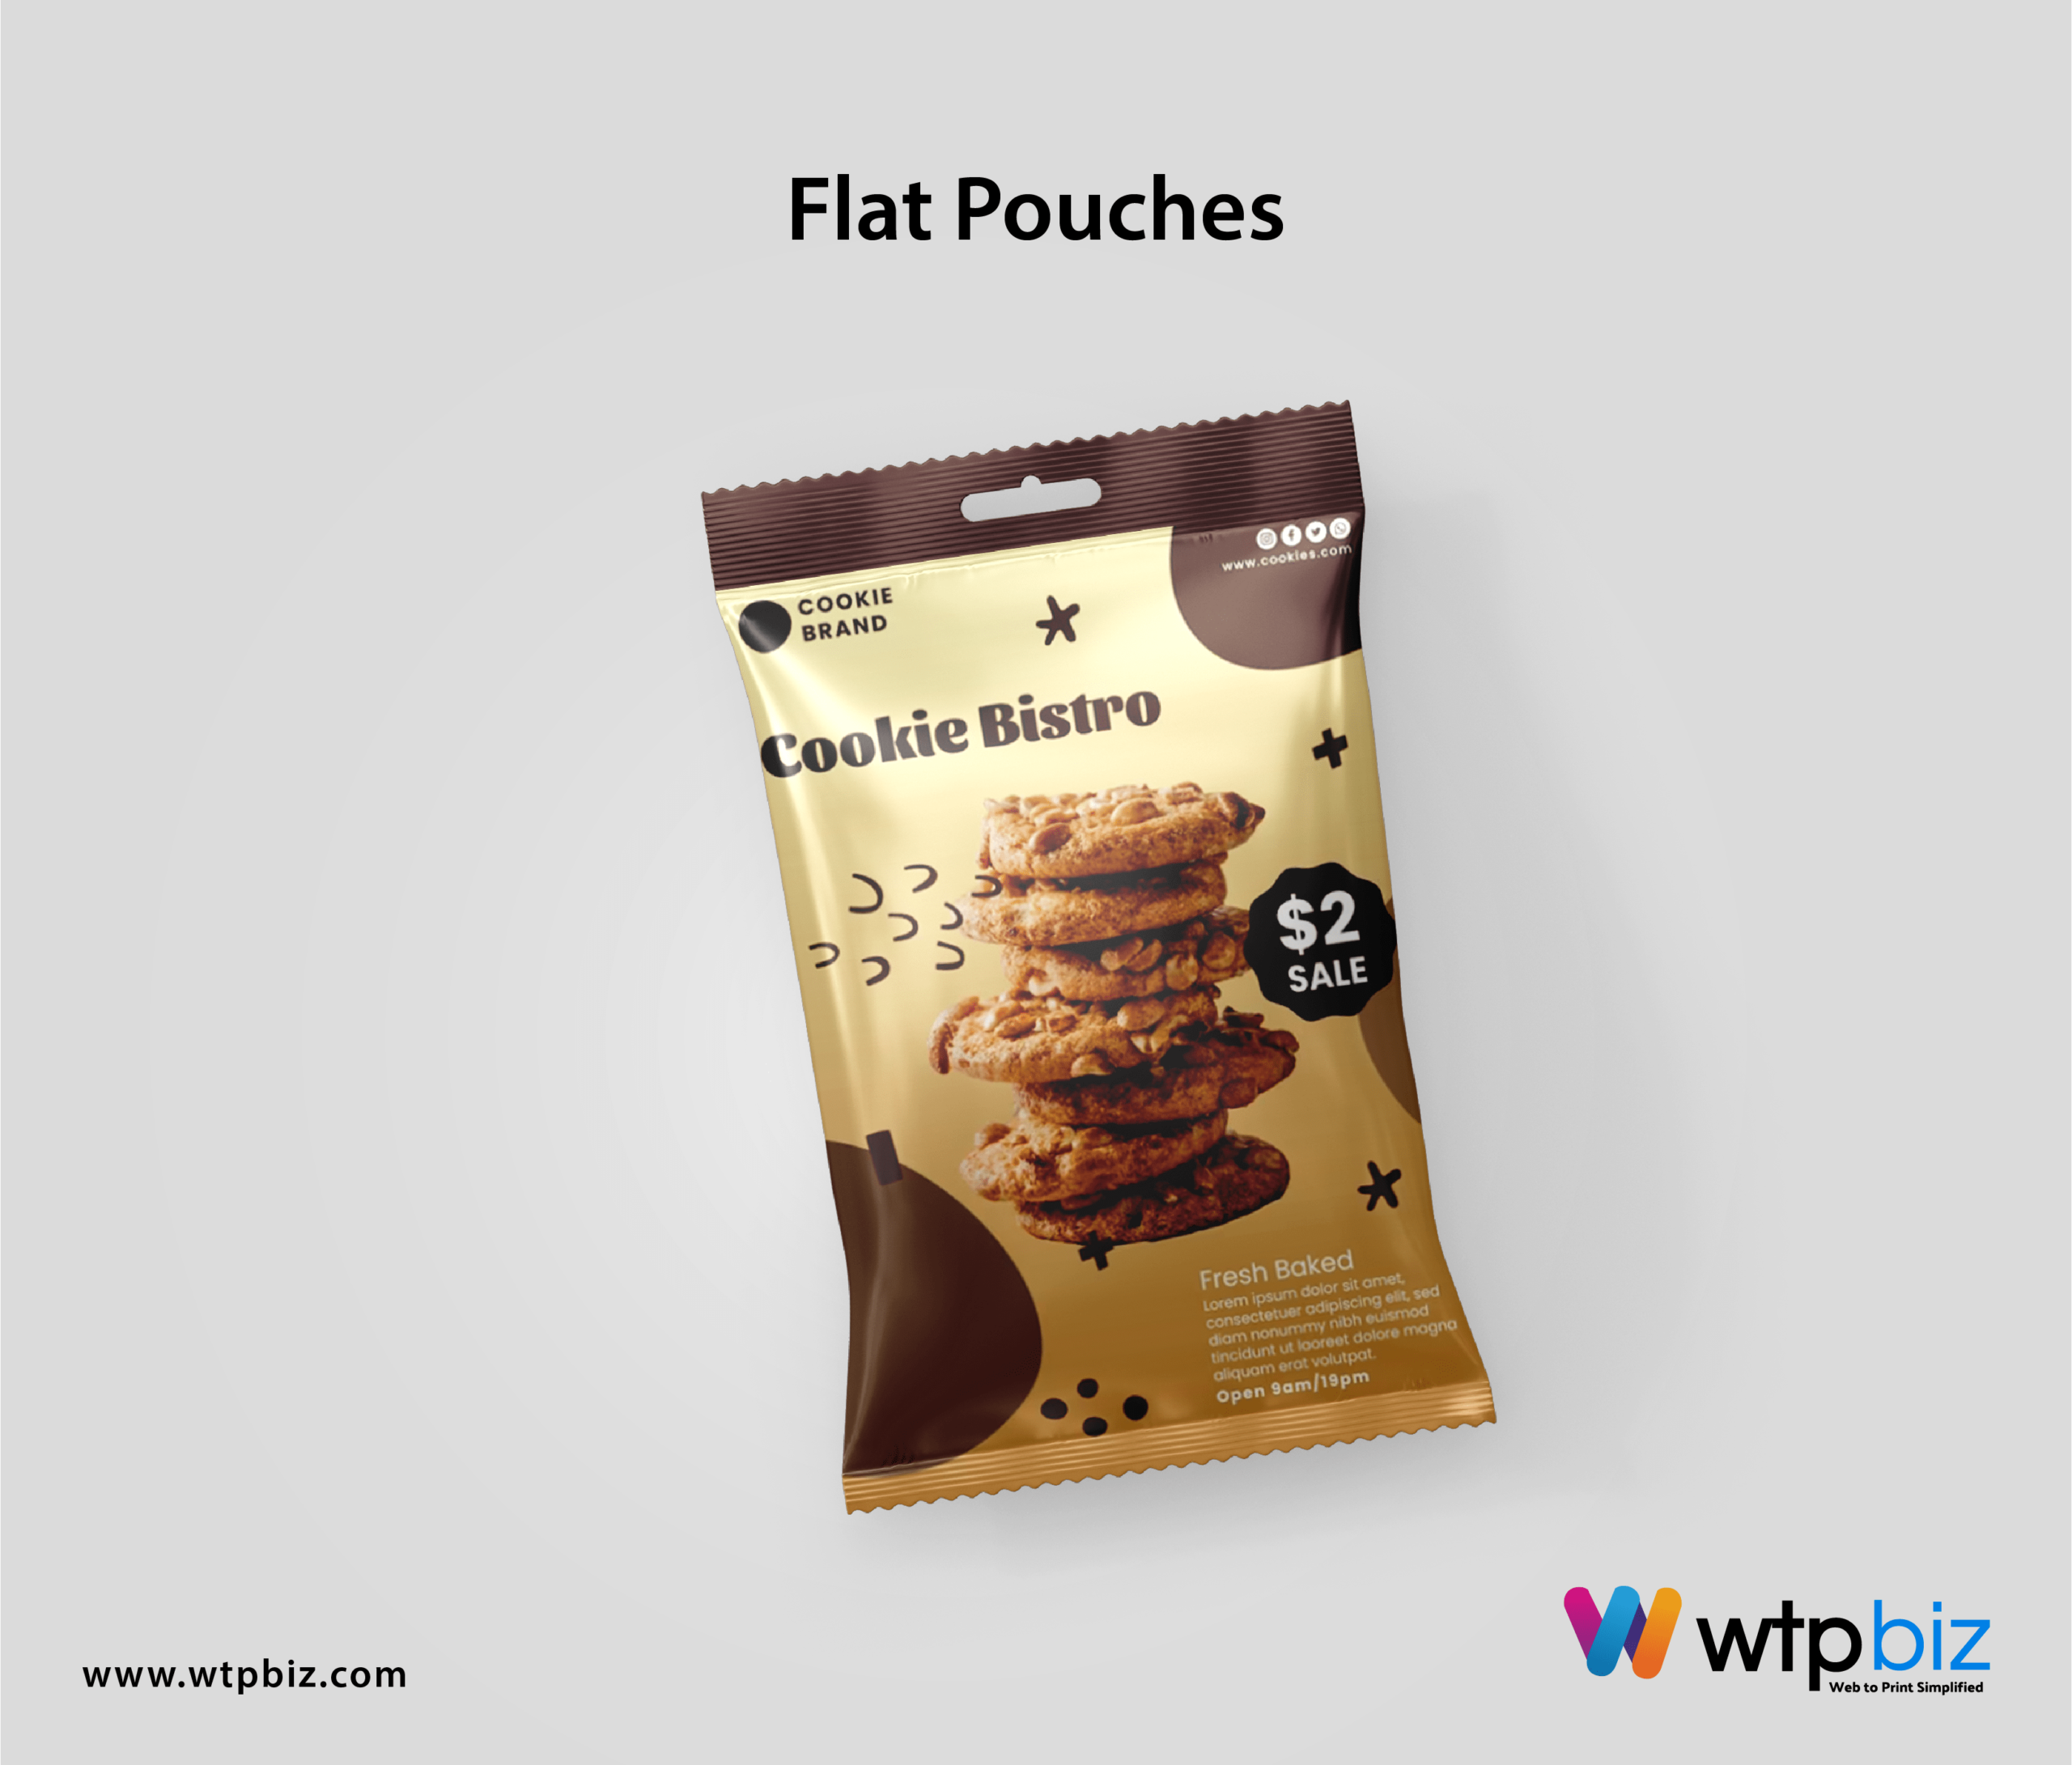 Flat pouches